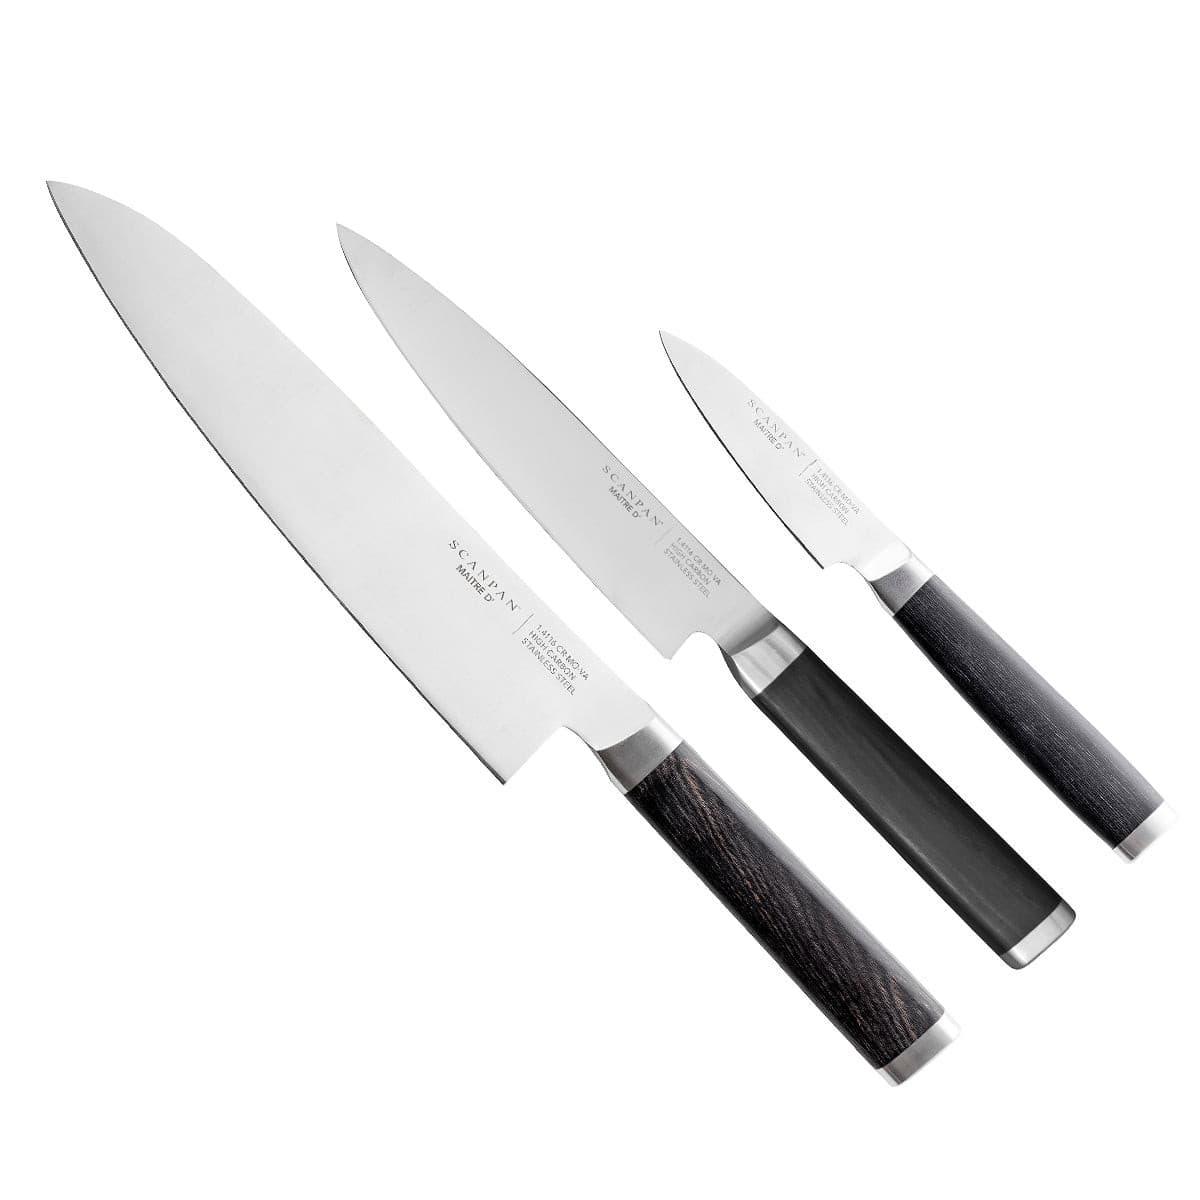 http://knife.co.nz/cdn/shop/products/scanpan-maitre-d-3-piece-chef-set-544614.jpg?v=1693993140